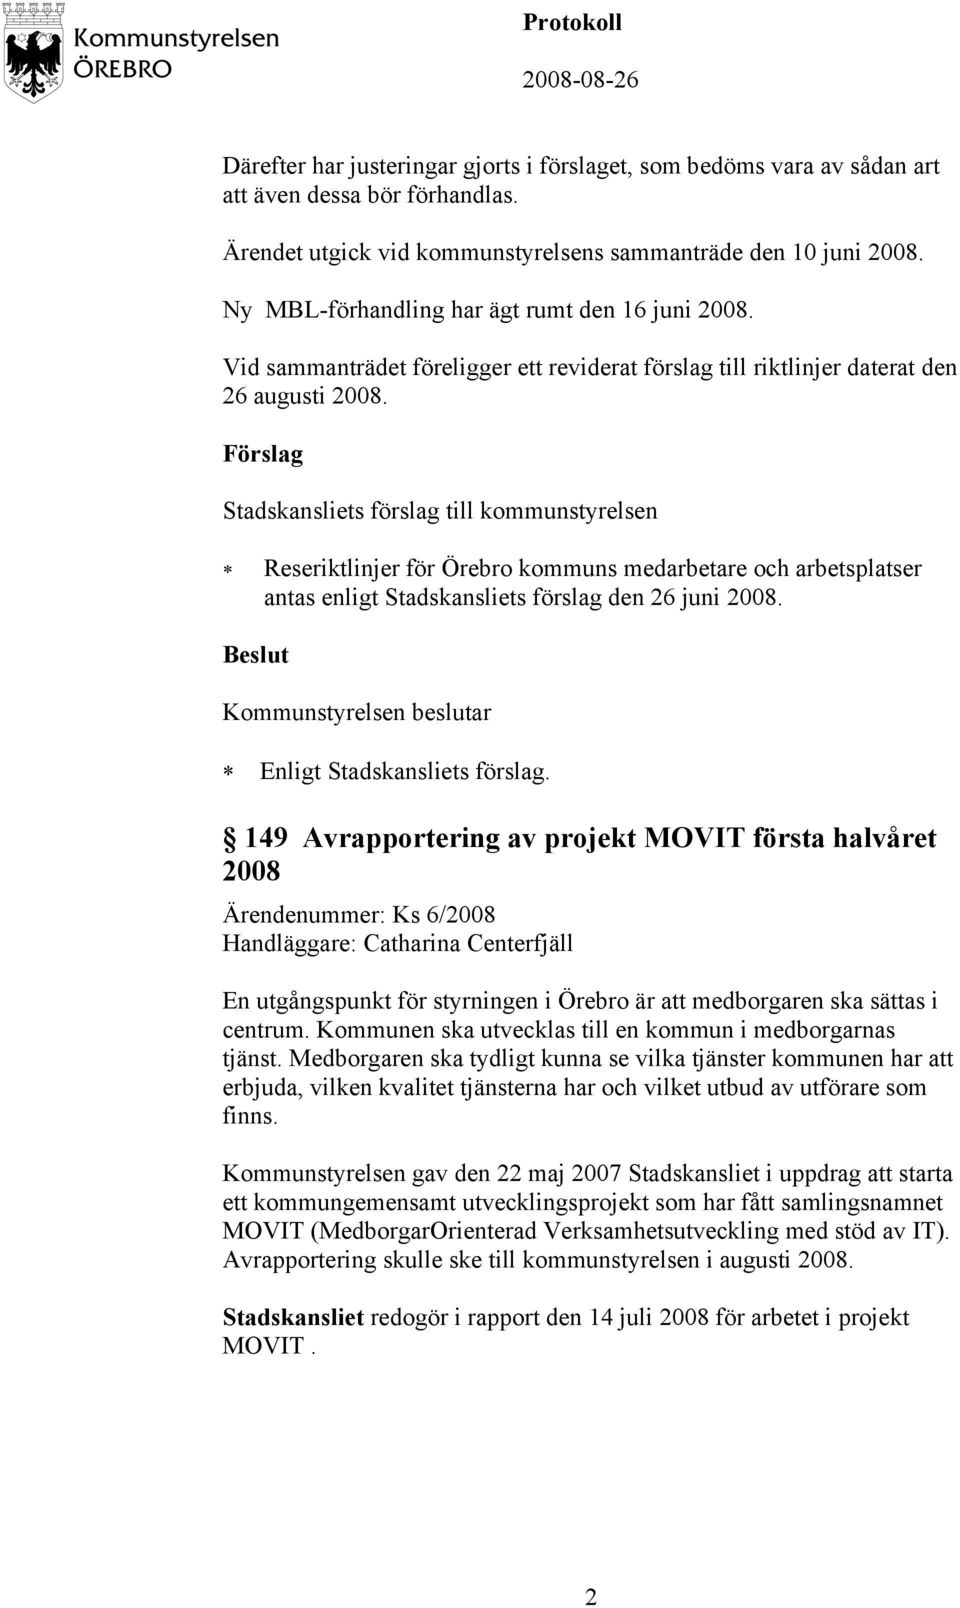 Reseriktlinjer för Örebro kommuns medarbetare och arbetsplatser antas enligt Stadskansliets förslag den 26 juni 2008. Enligt Stadskansliets förslag.